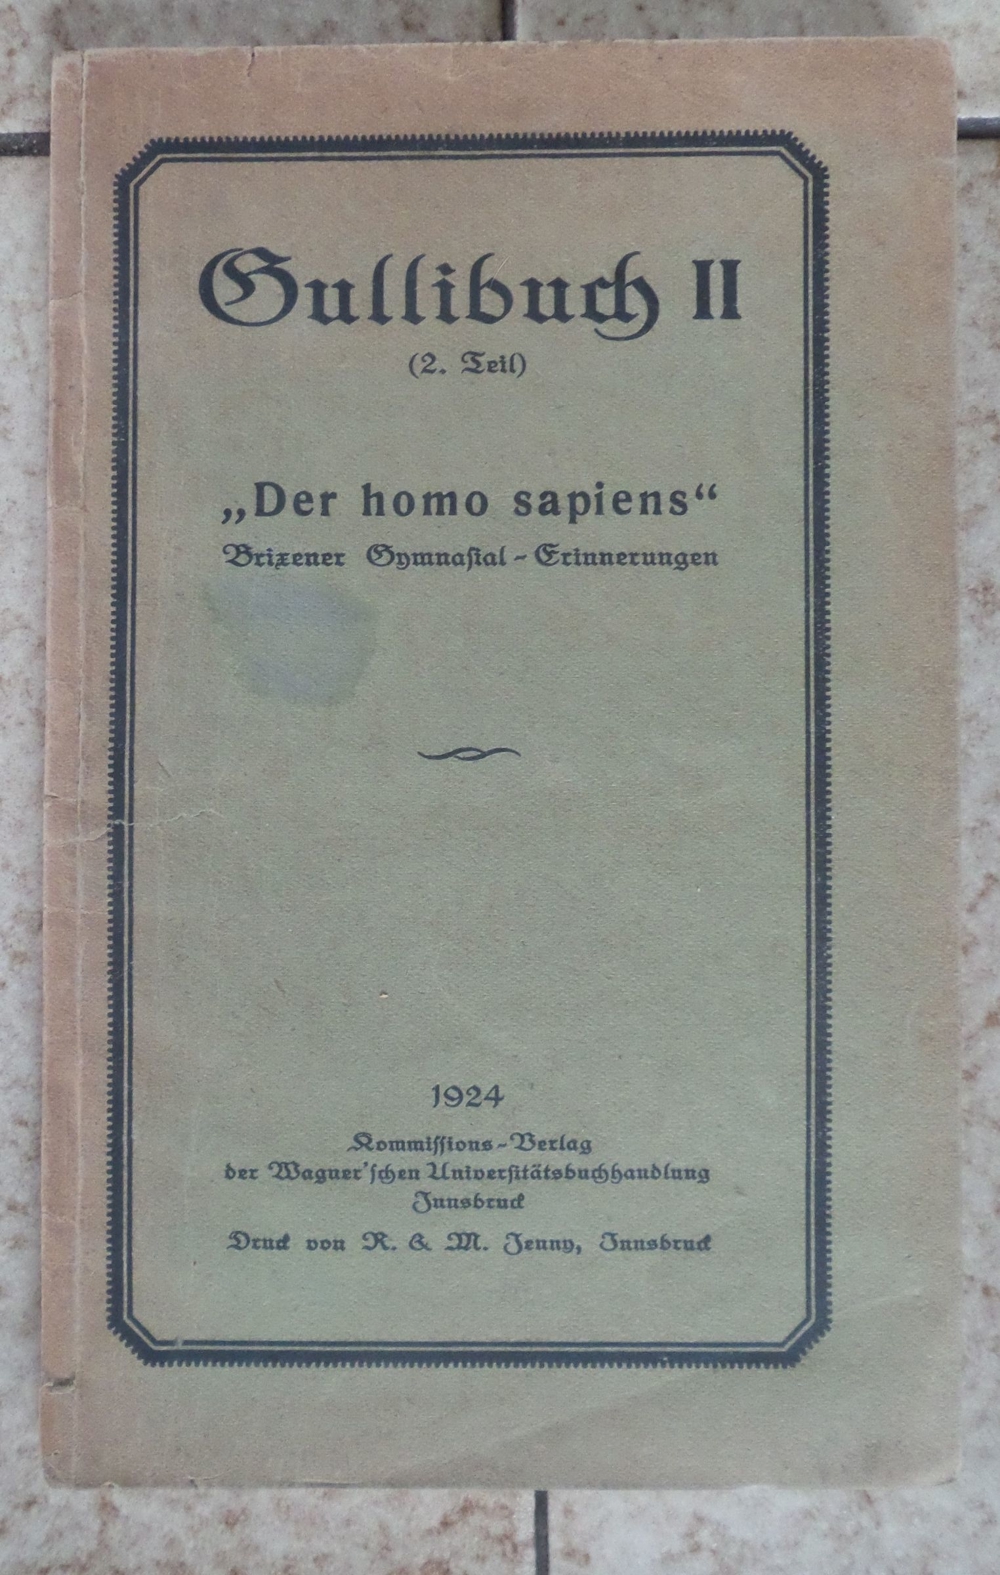 Gullibuch II "Der homo sapiens" Brixener Gymnasial-Erinnerungen